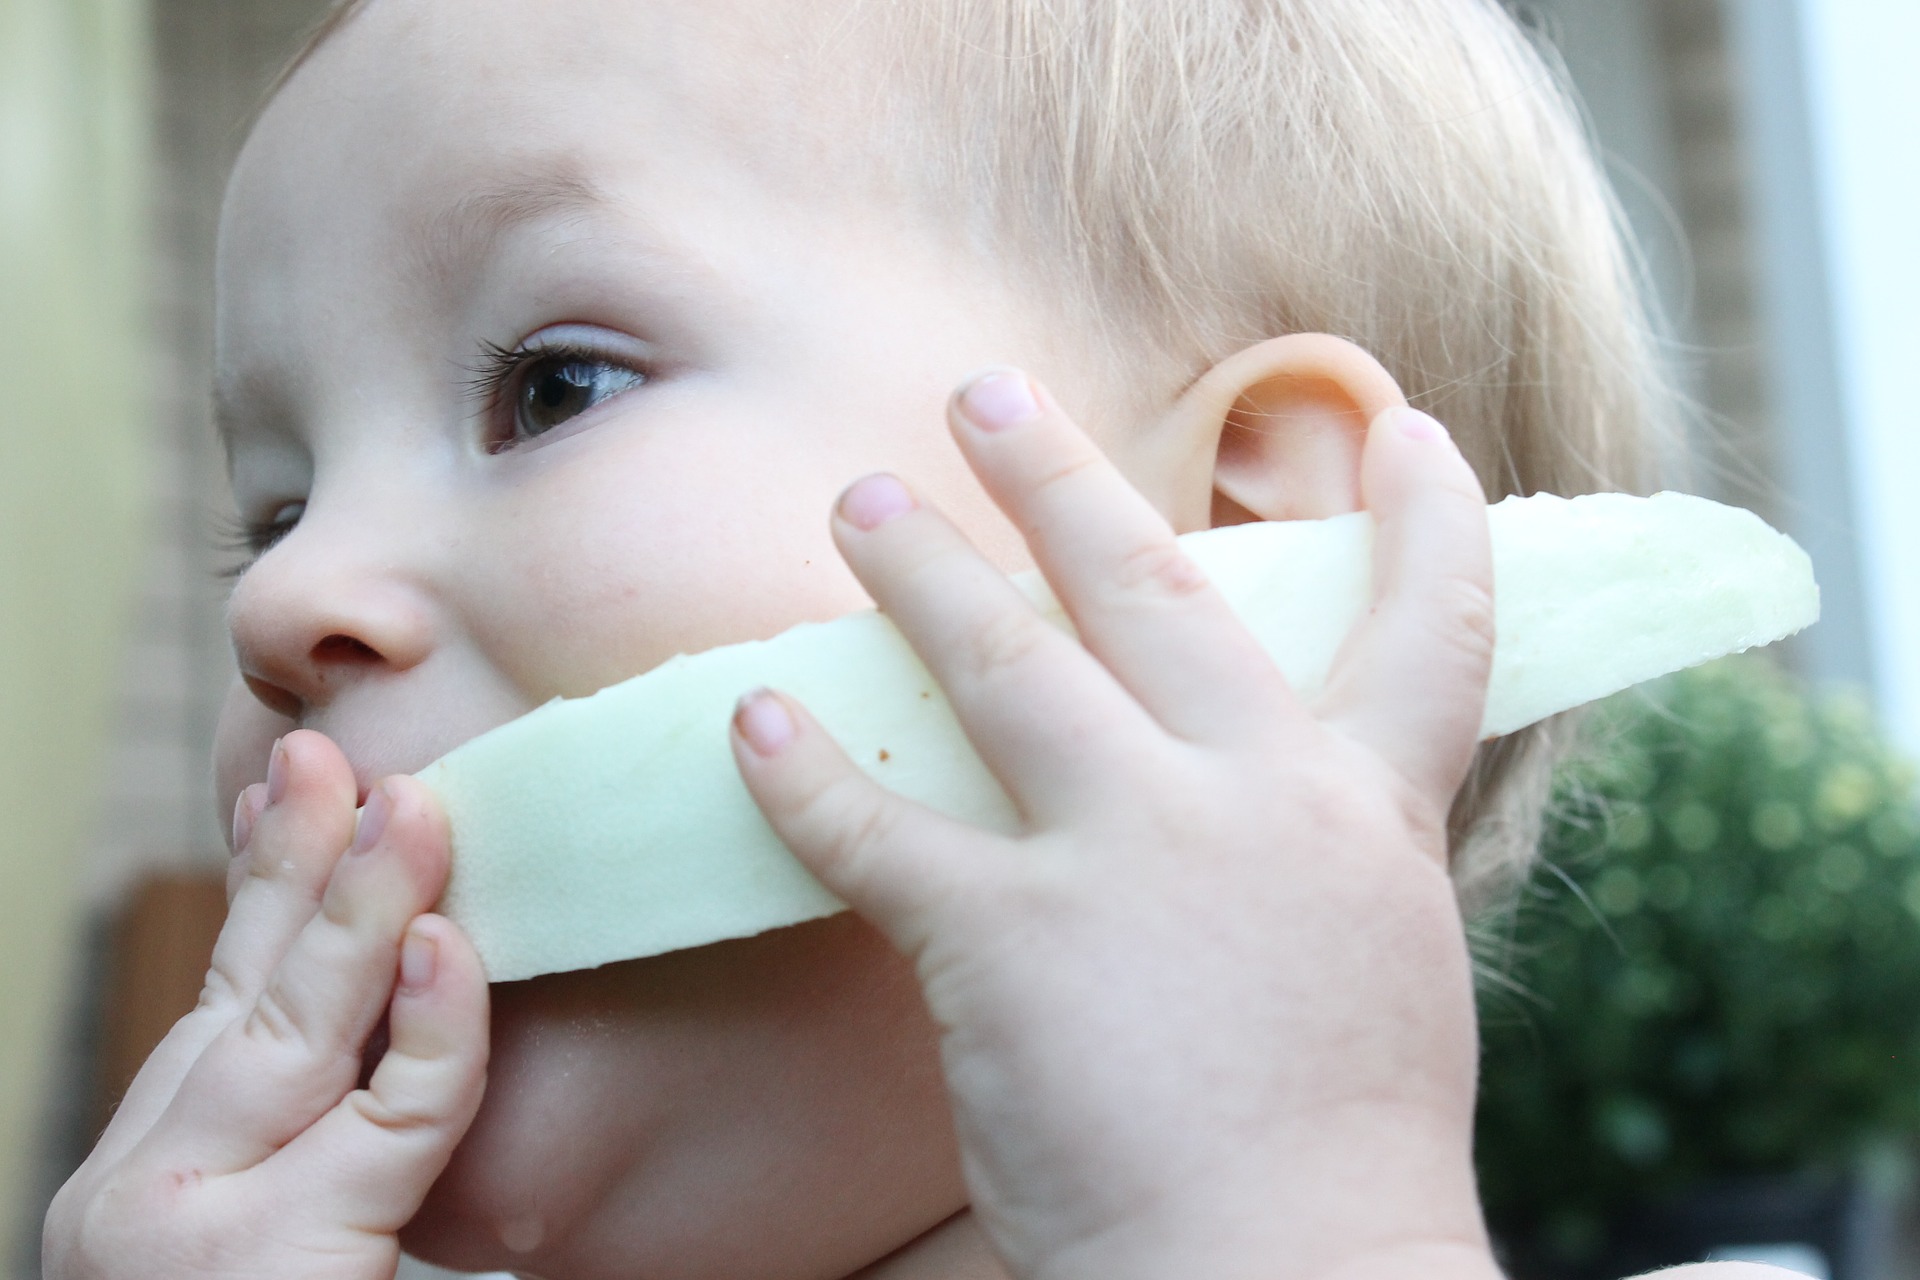 BLW estimula o bebê a comer sozinho os alimentos. Foto: Pixabay